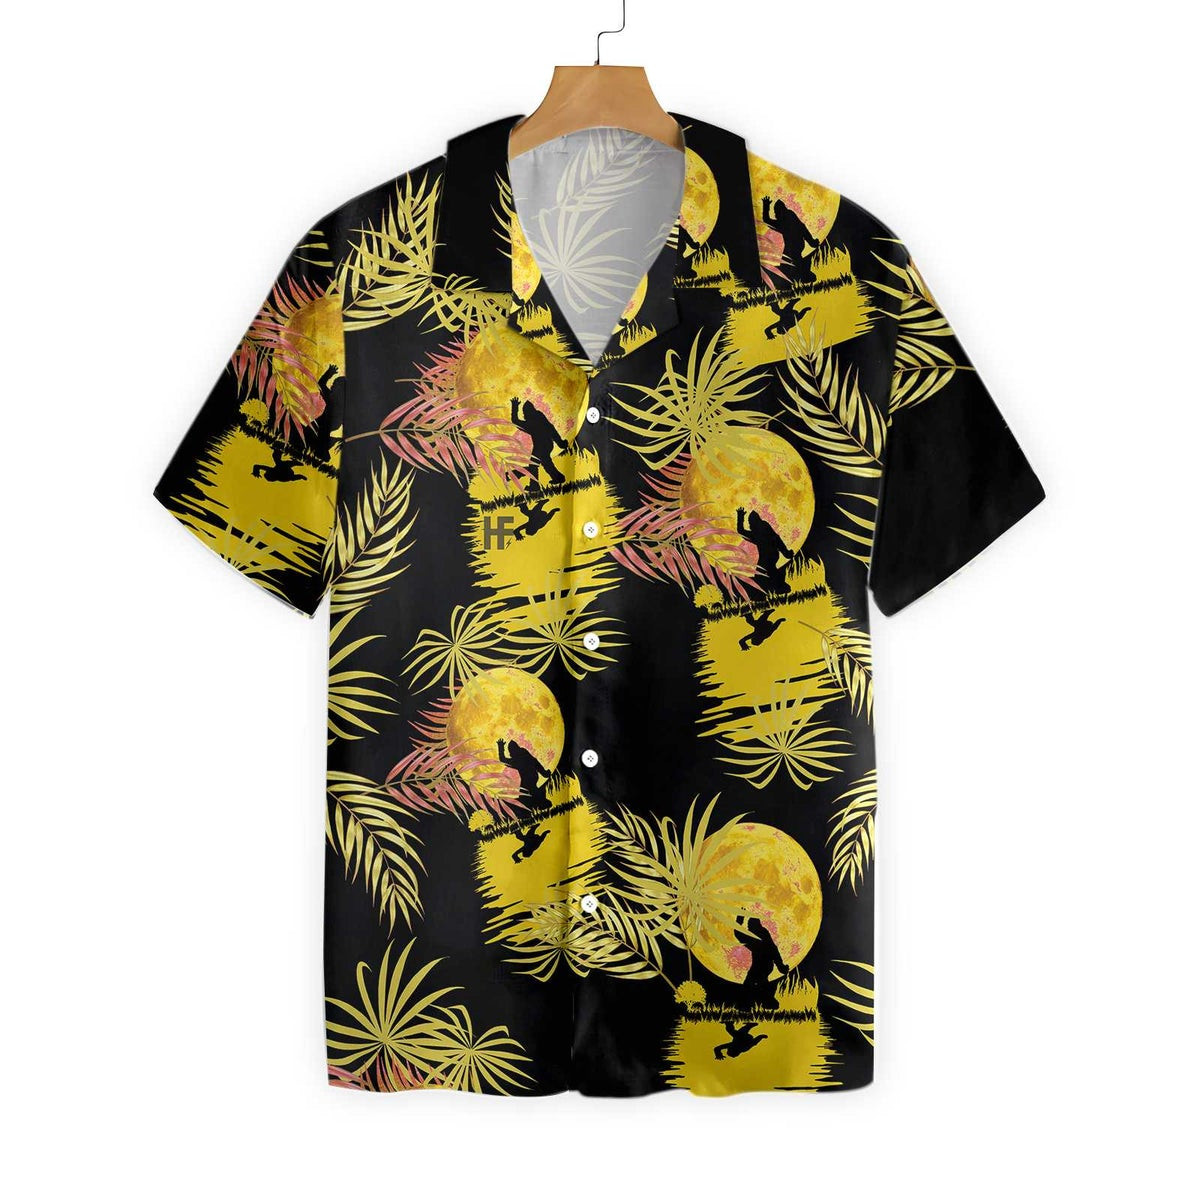 Bigfoot Tropical Yellow Moon Bigfoot Hawaiian Shirt Black And Yellow Moonlight Bigfoot Shirt For Men